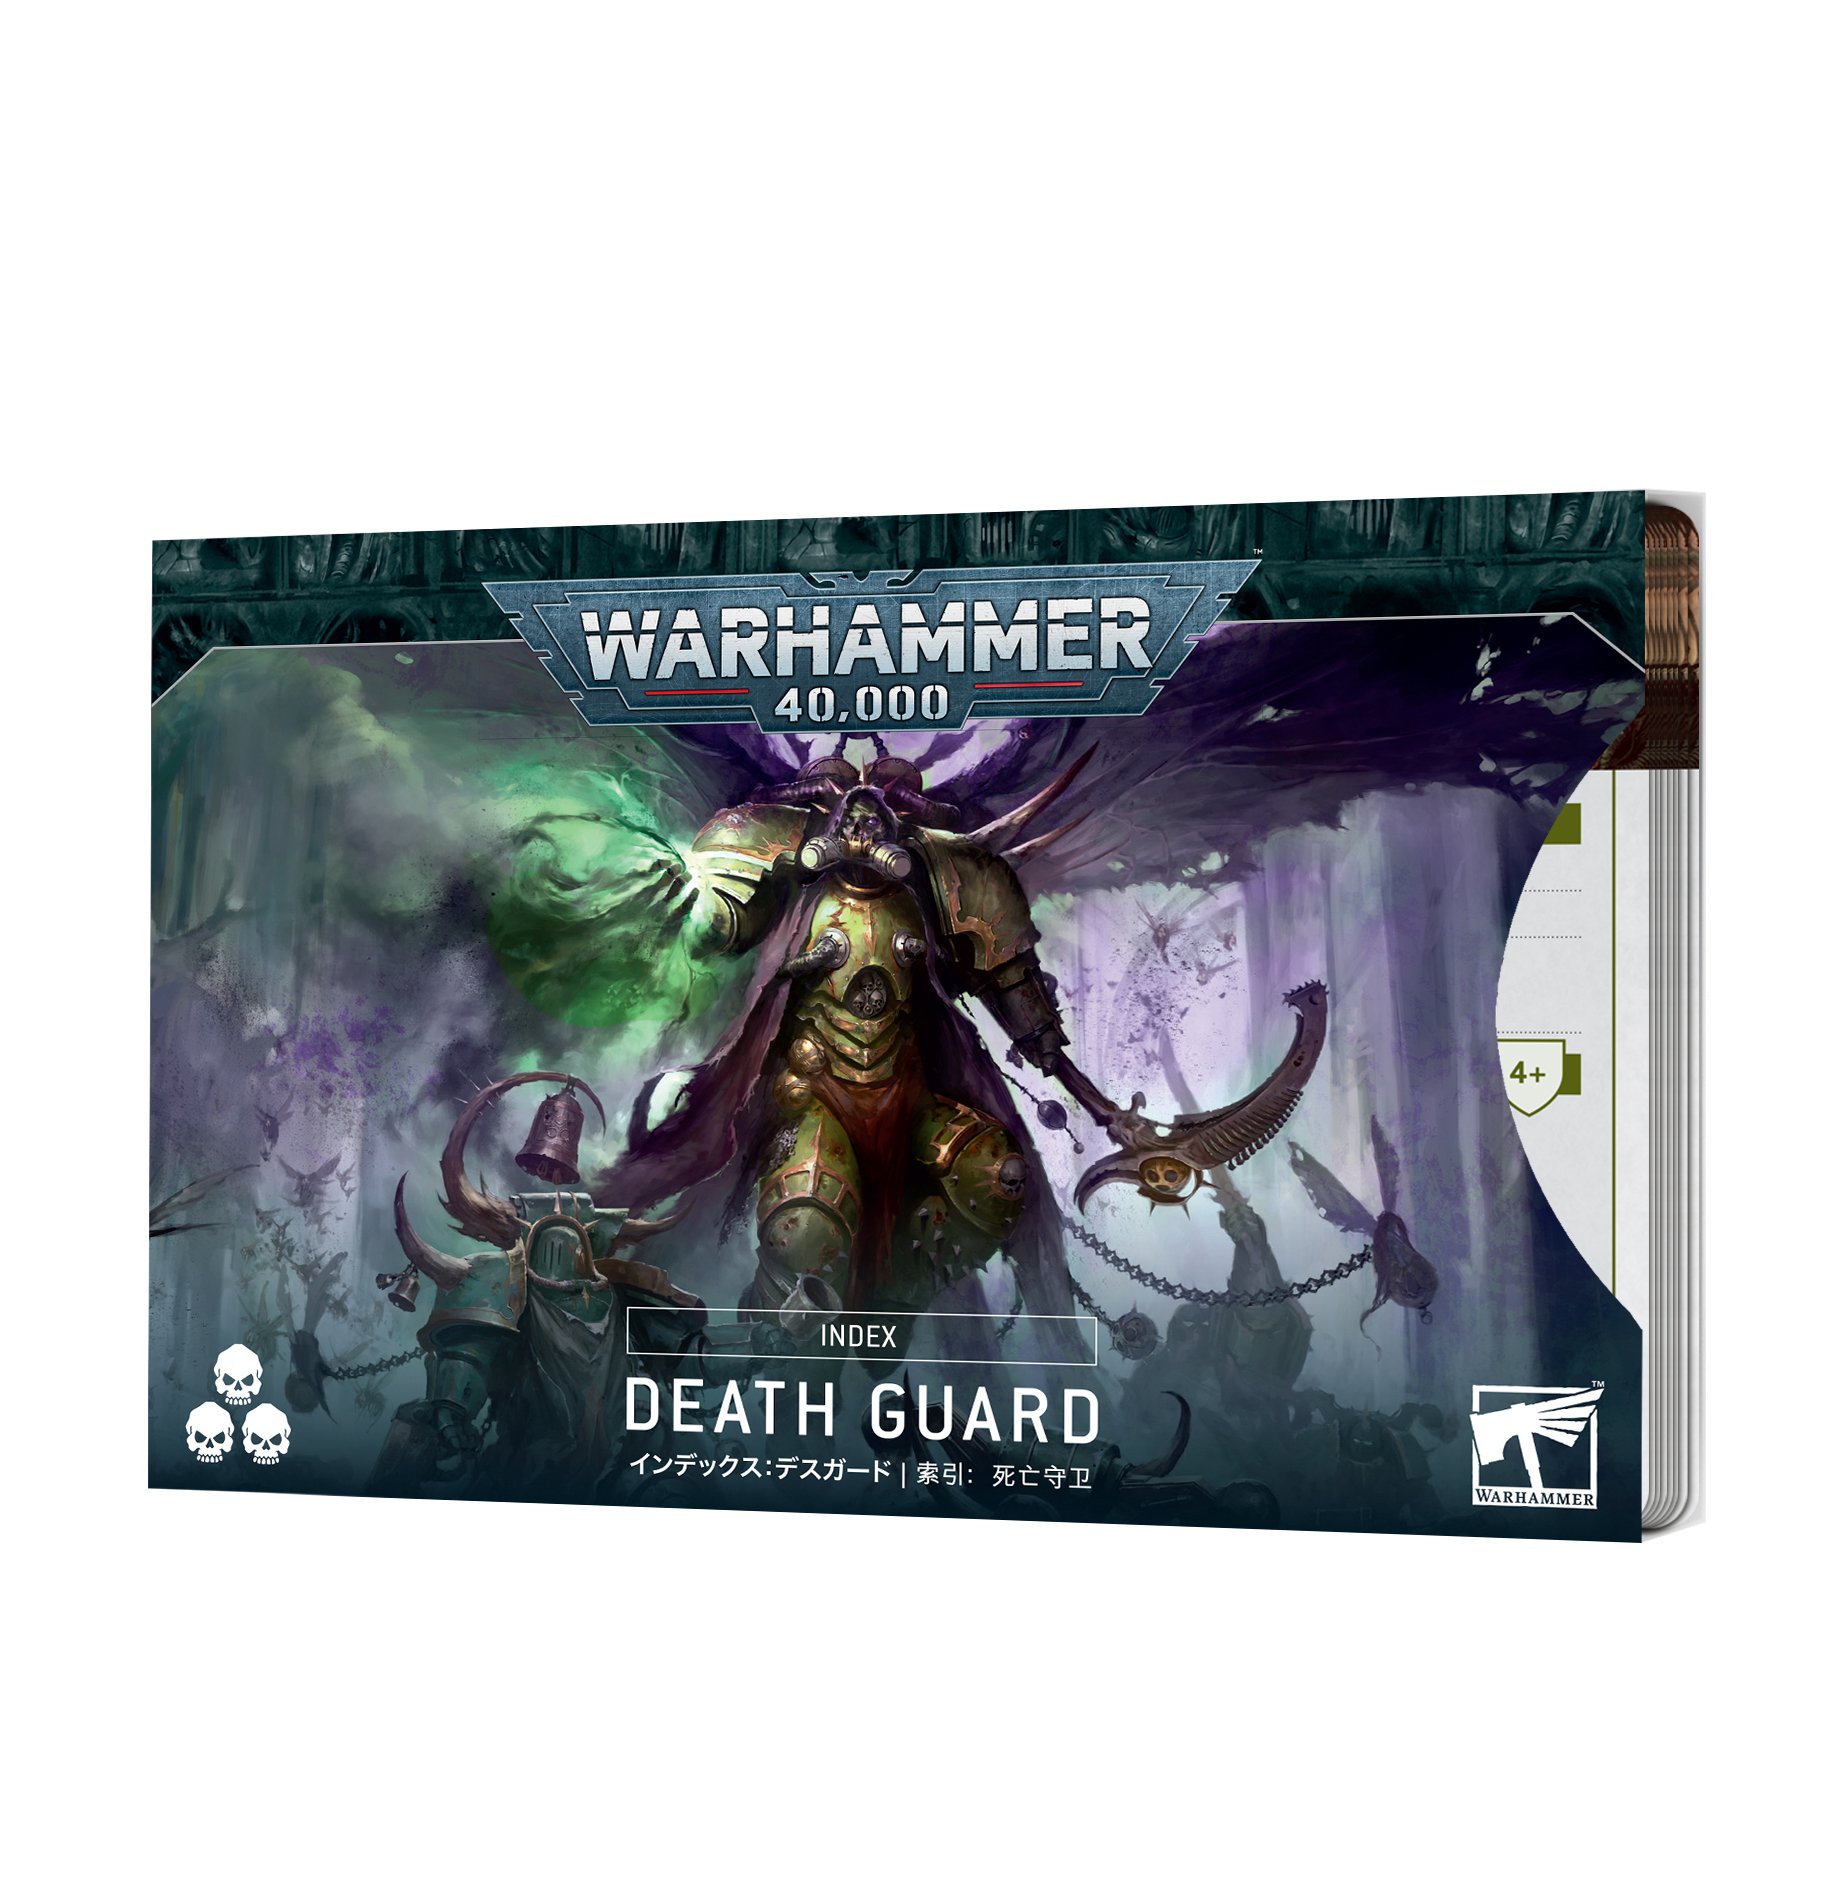 death guard cards